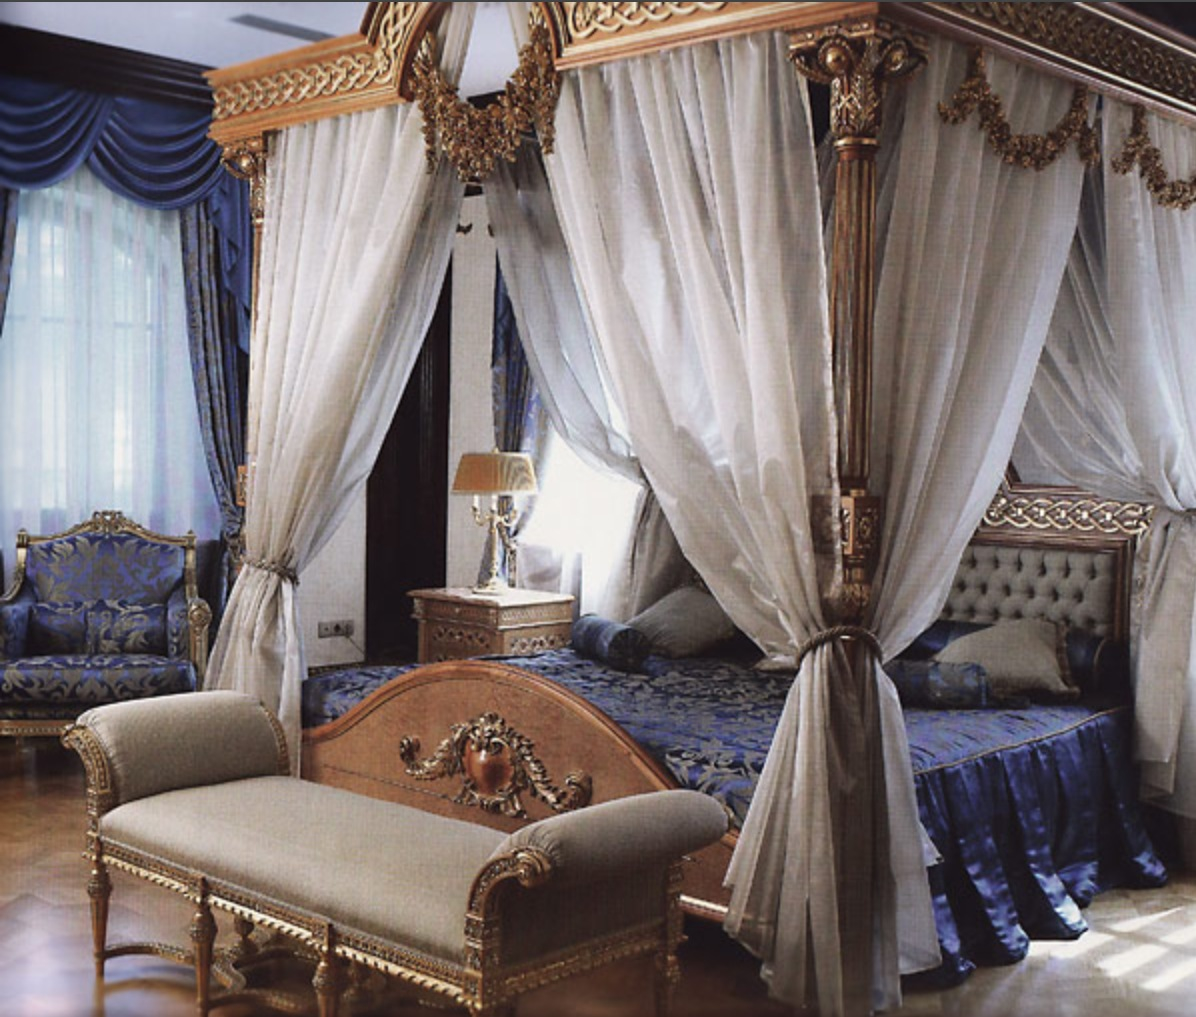 банкетк ав стиле ампир в интерьере синей спальни